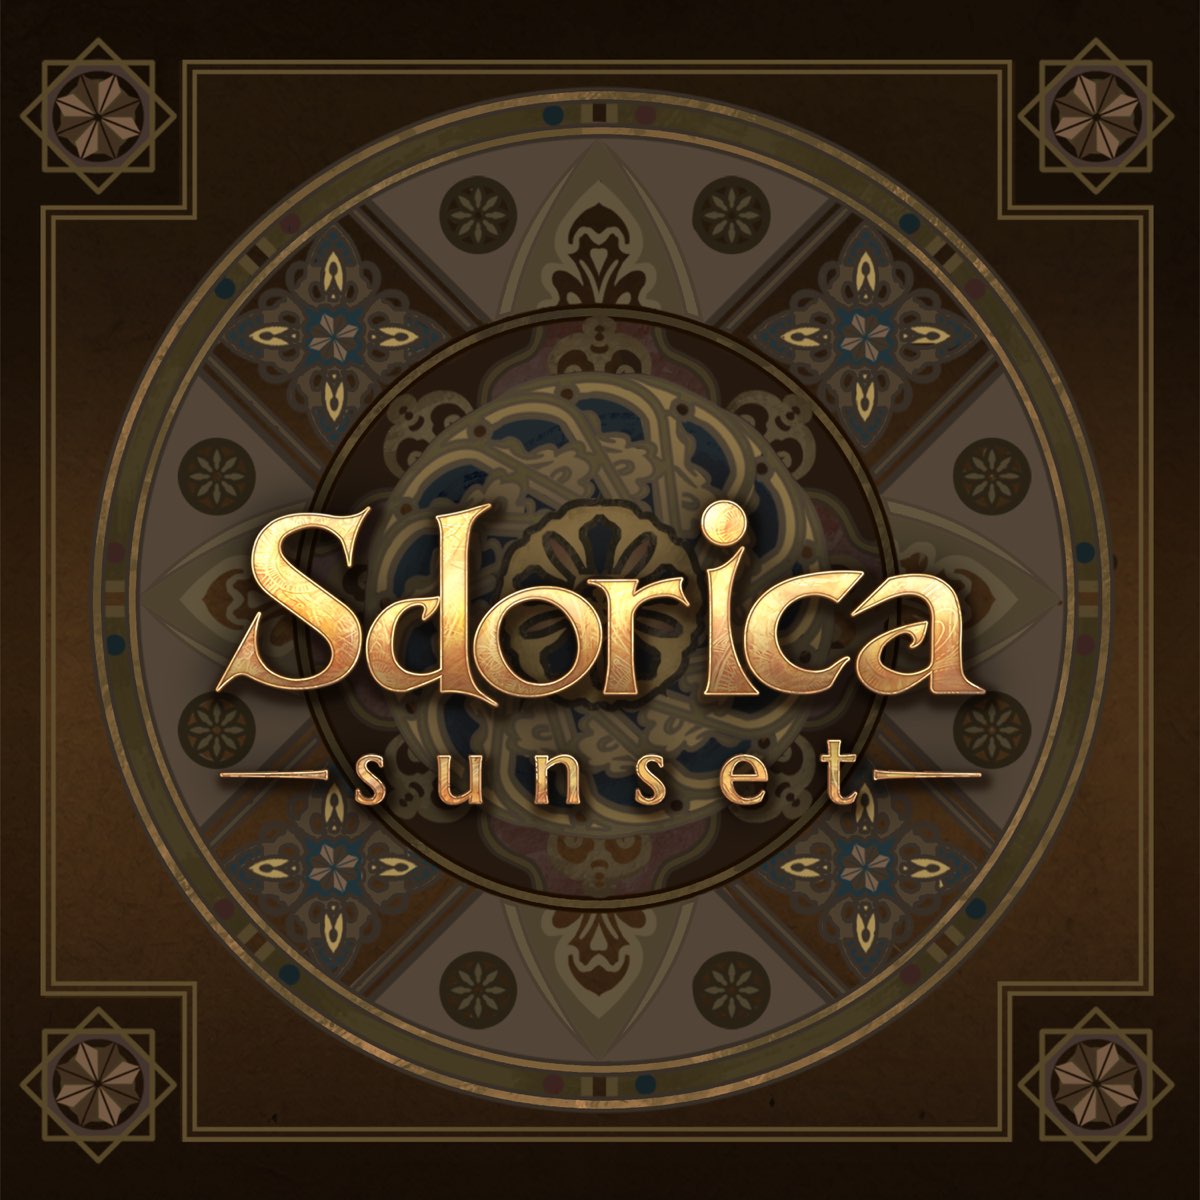 Sdorica Sunset (Original Soundtrack, Vol. 1) - Album by Various 